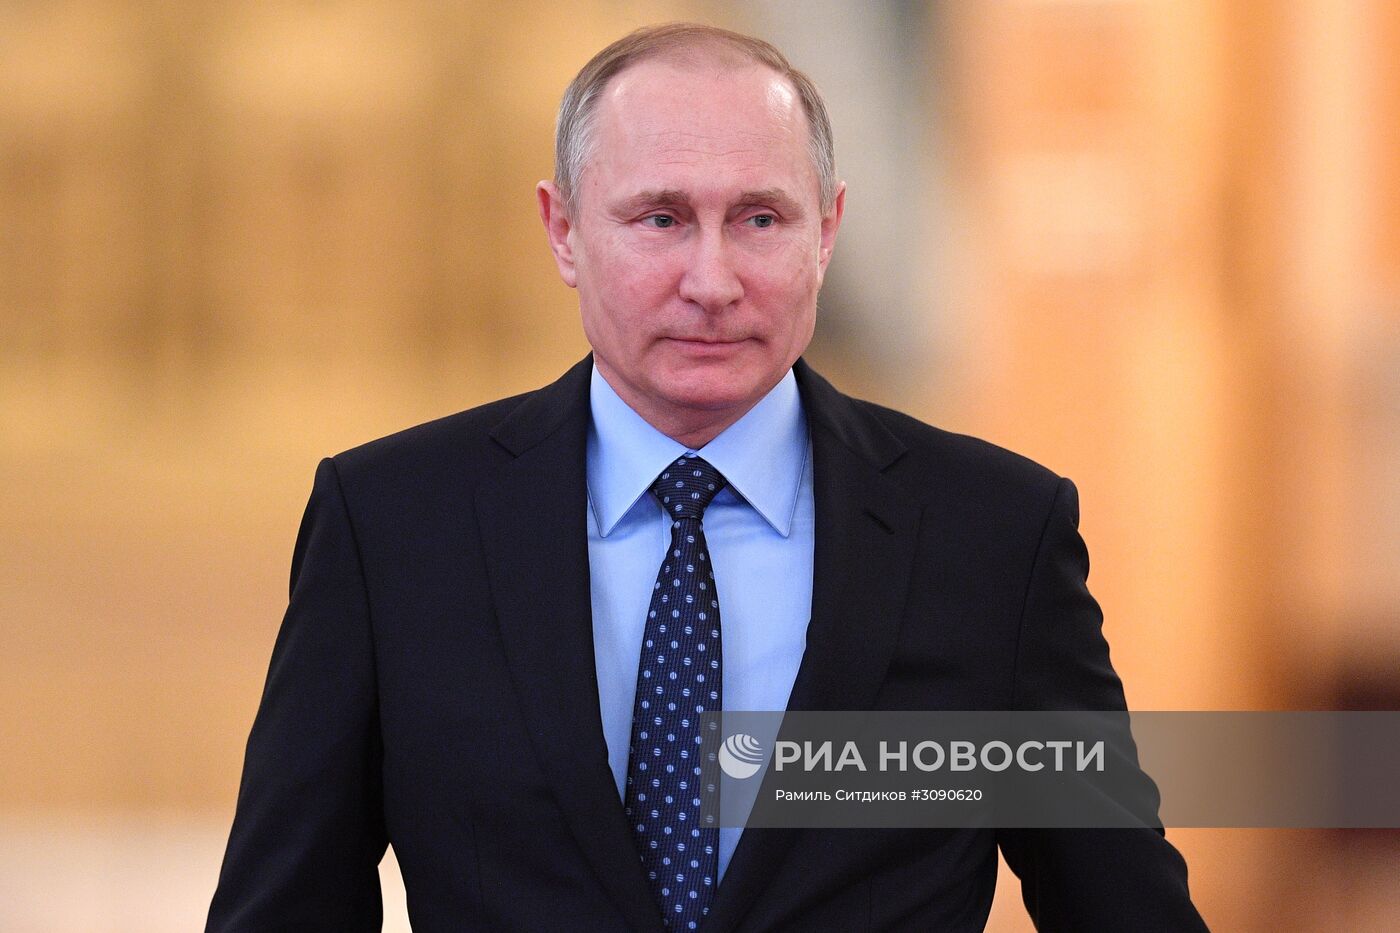 Президент РФ В. Путин провел совместное заседание Госсовета и Комиссии по мониторингу достижения целевых показателей социально-экономического развития страны